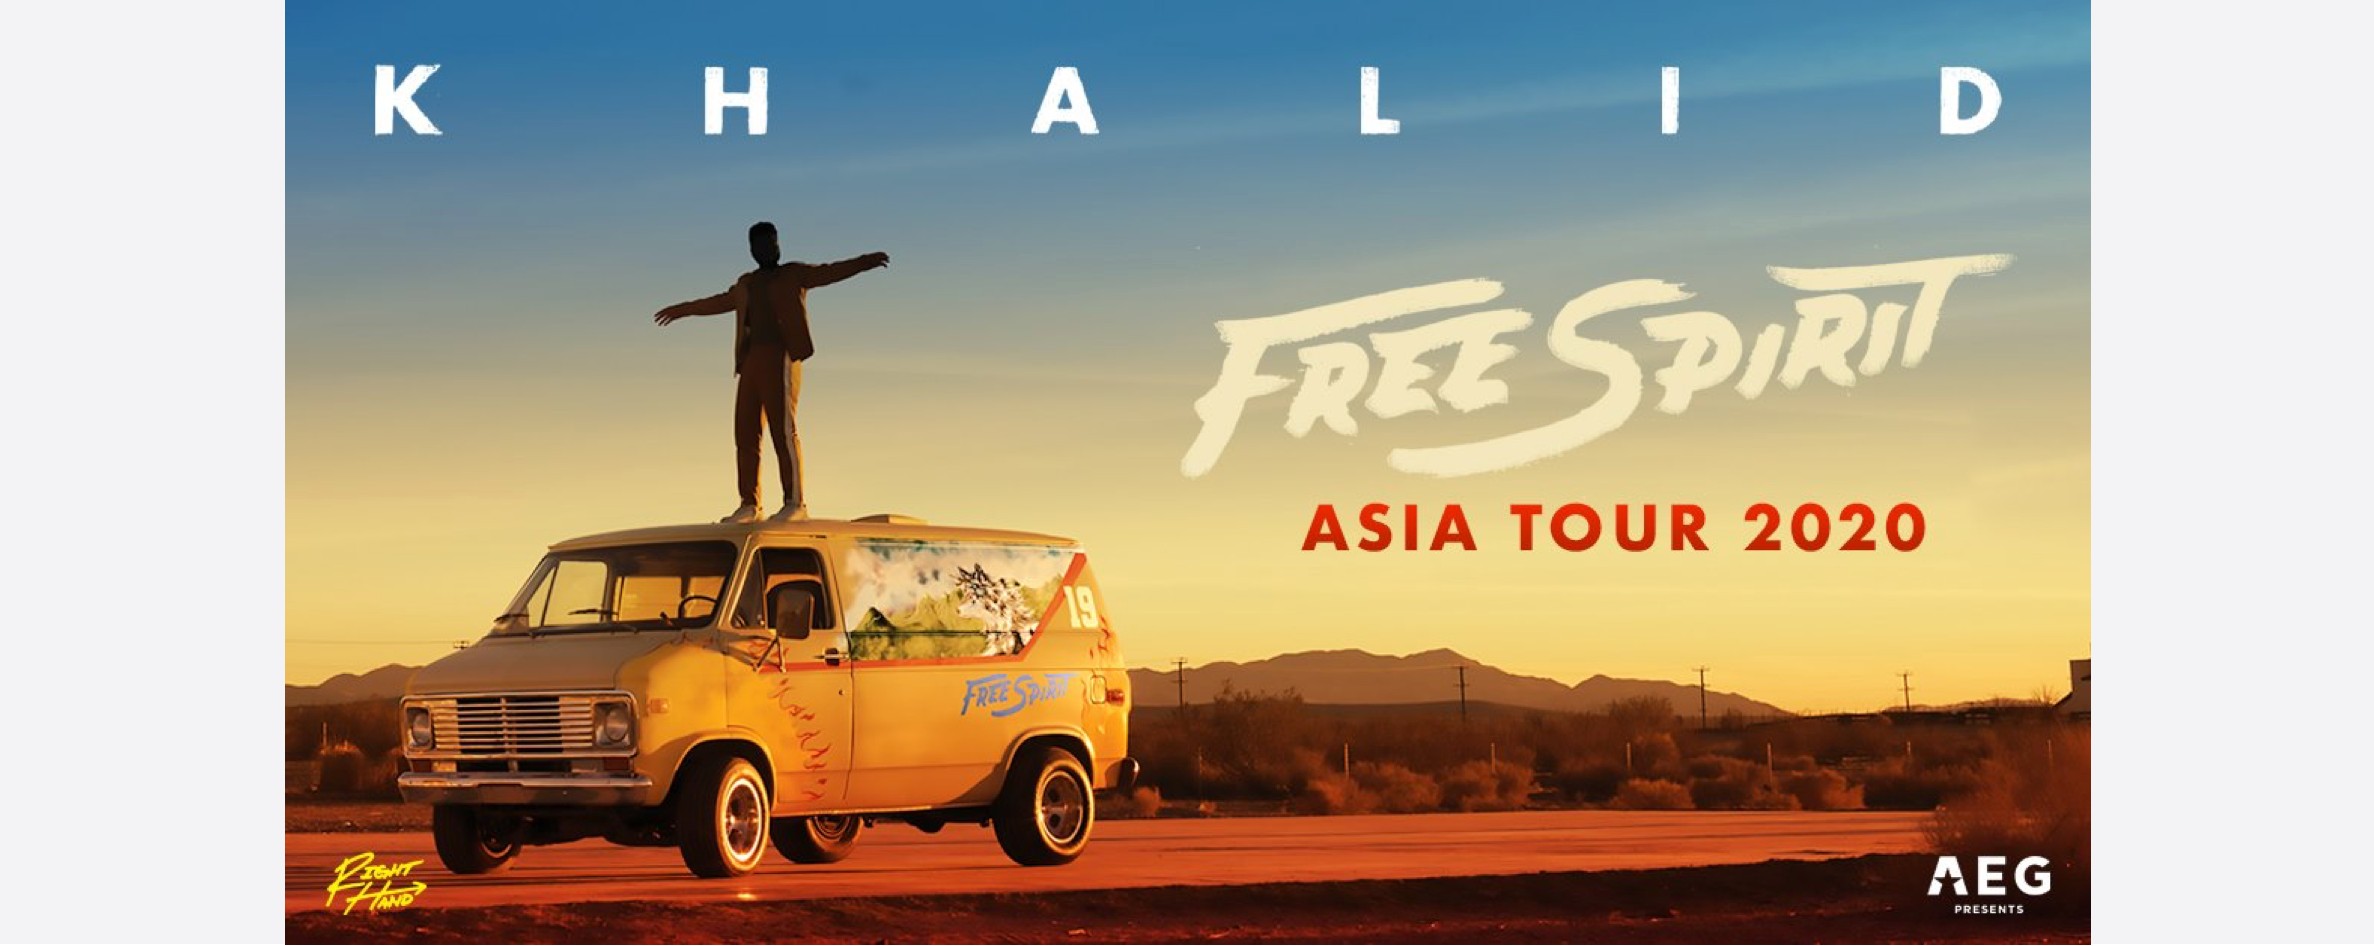 [POSTPONED] Khalid Free Spirit World Tour 2020 Singapore